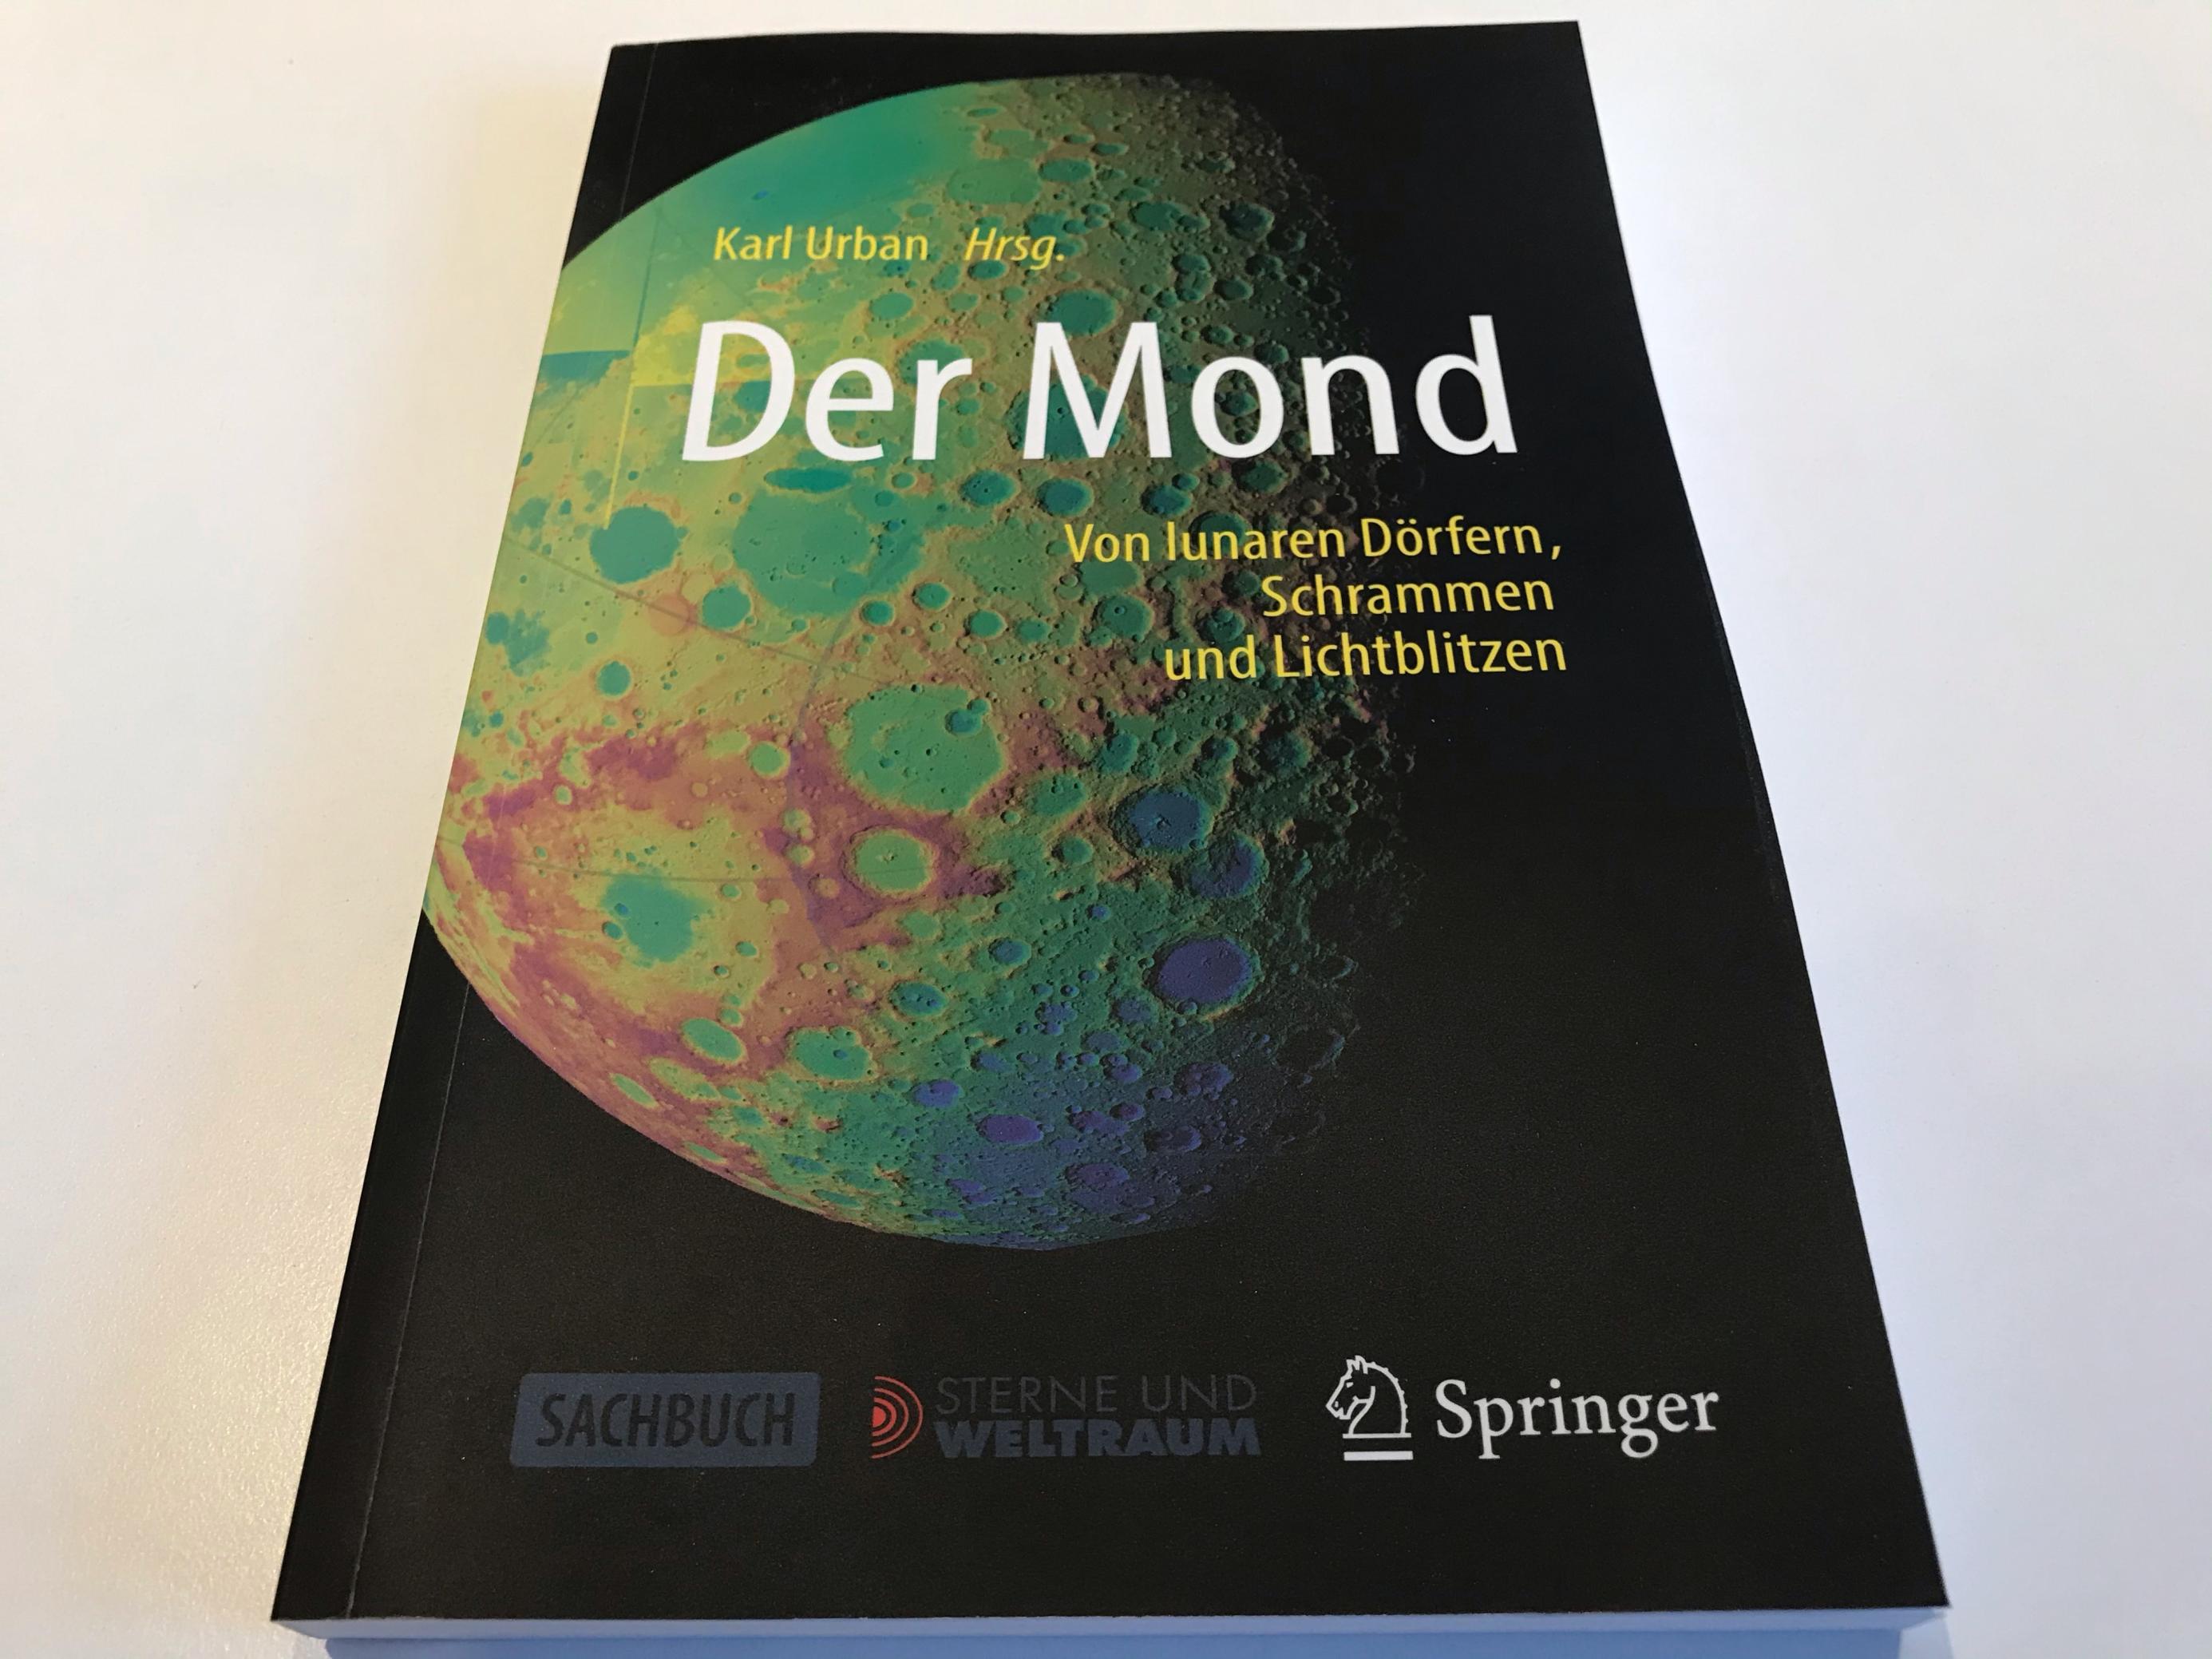 Das Buch „Der Mond“ herausgegeben von Karl Urban, auf weißem Untergrund